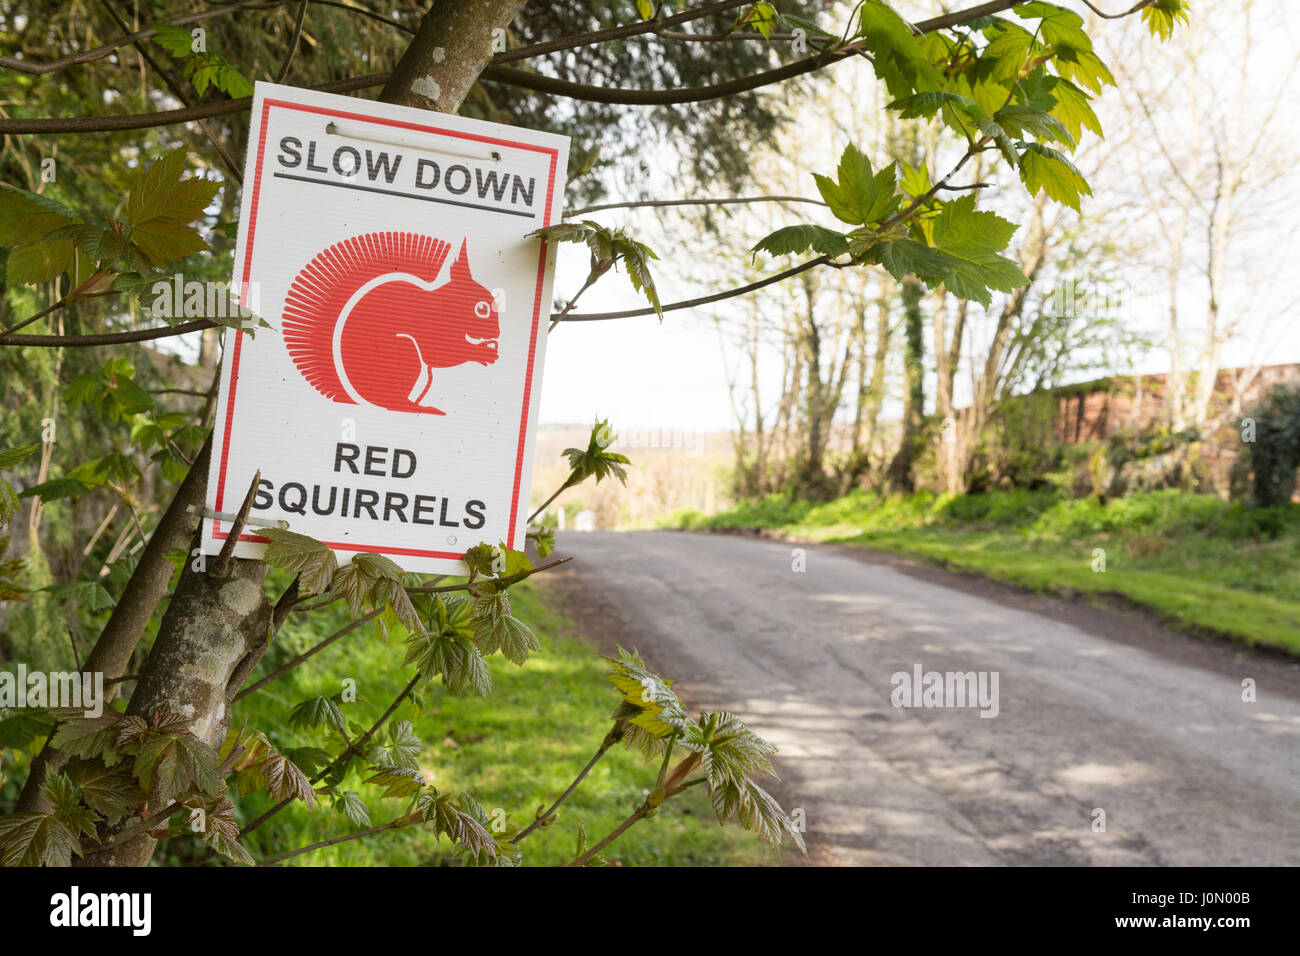 L'Écureuil roux avertissement ralentir, Lake District, England, UK Banque D'Images